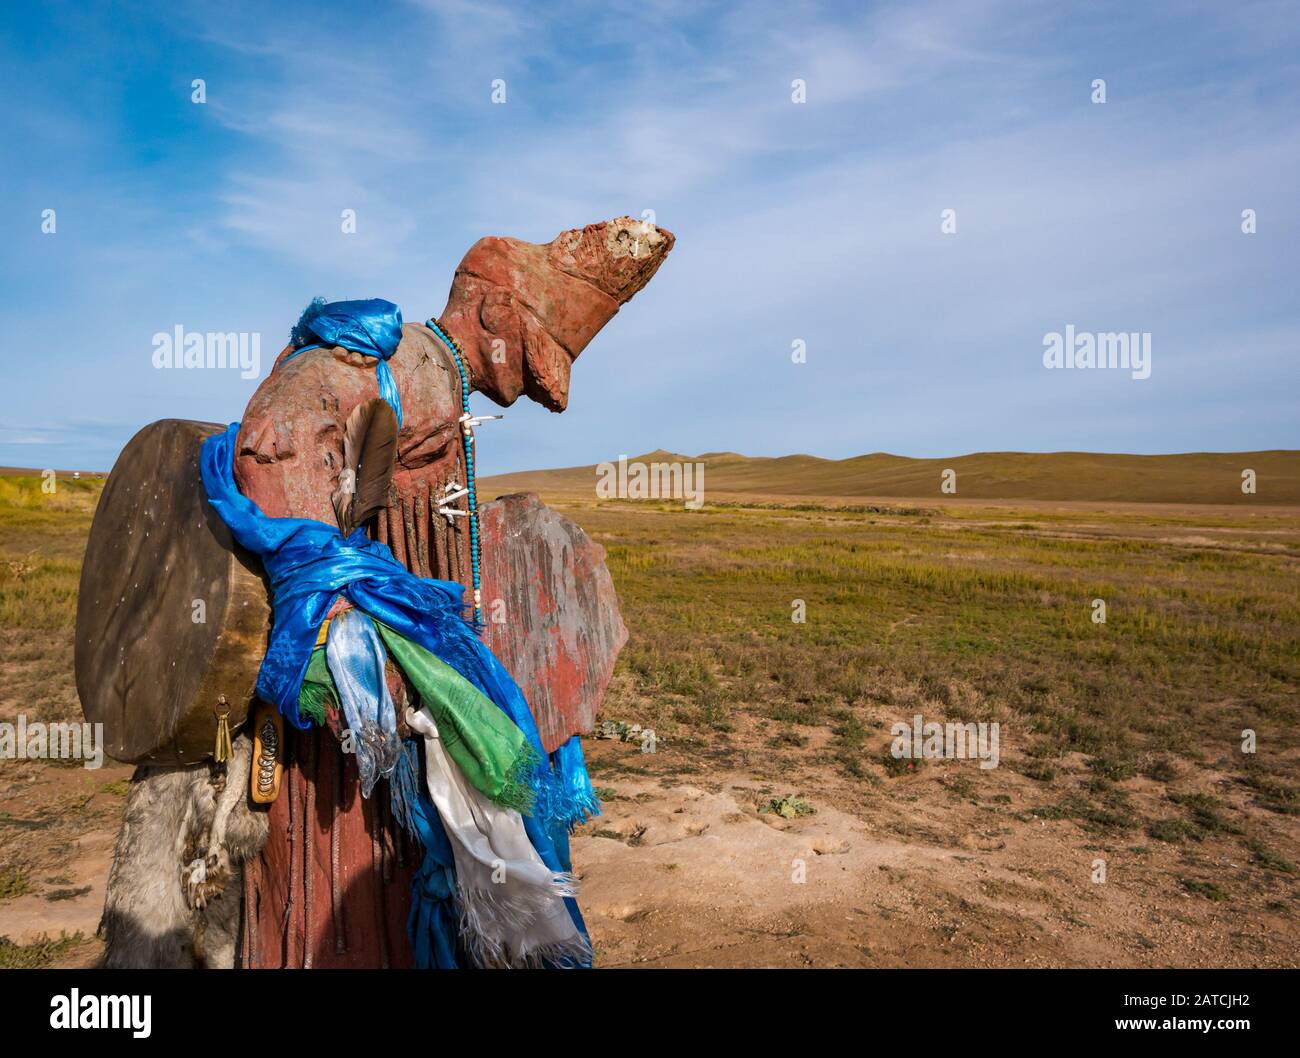 Statue du chaman du charisme mongol avec foulards de prière en soie bleue au bord de la route à la steppe, Mongolie, Asie Banque D'Images